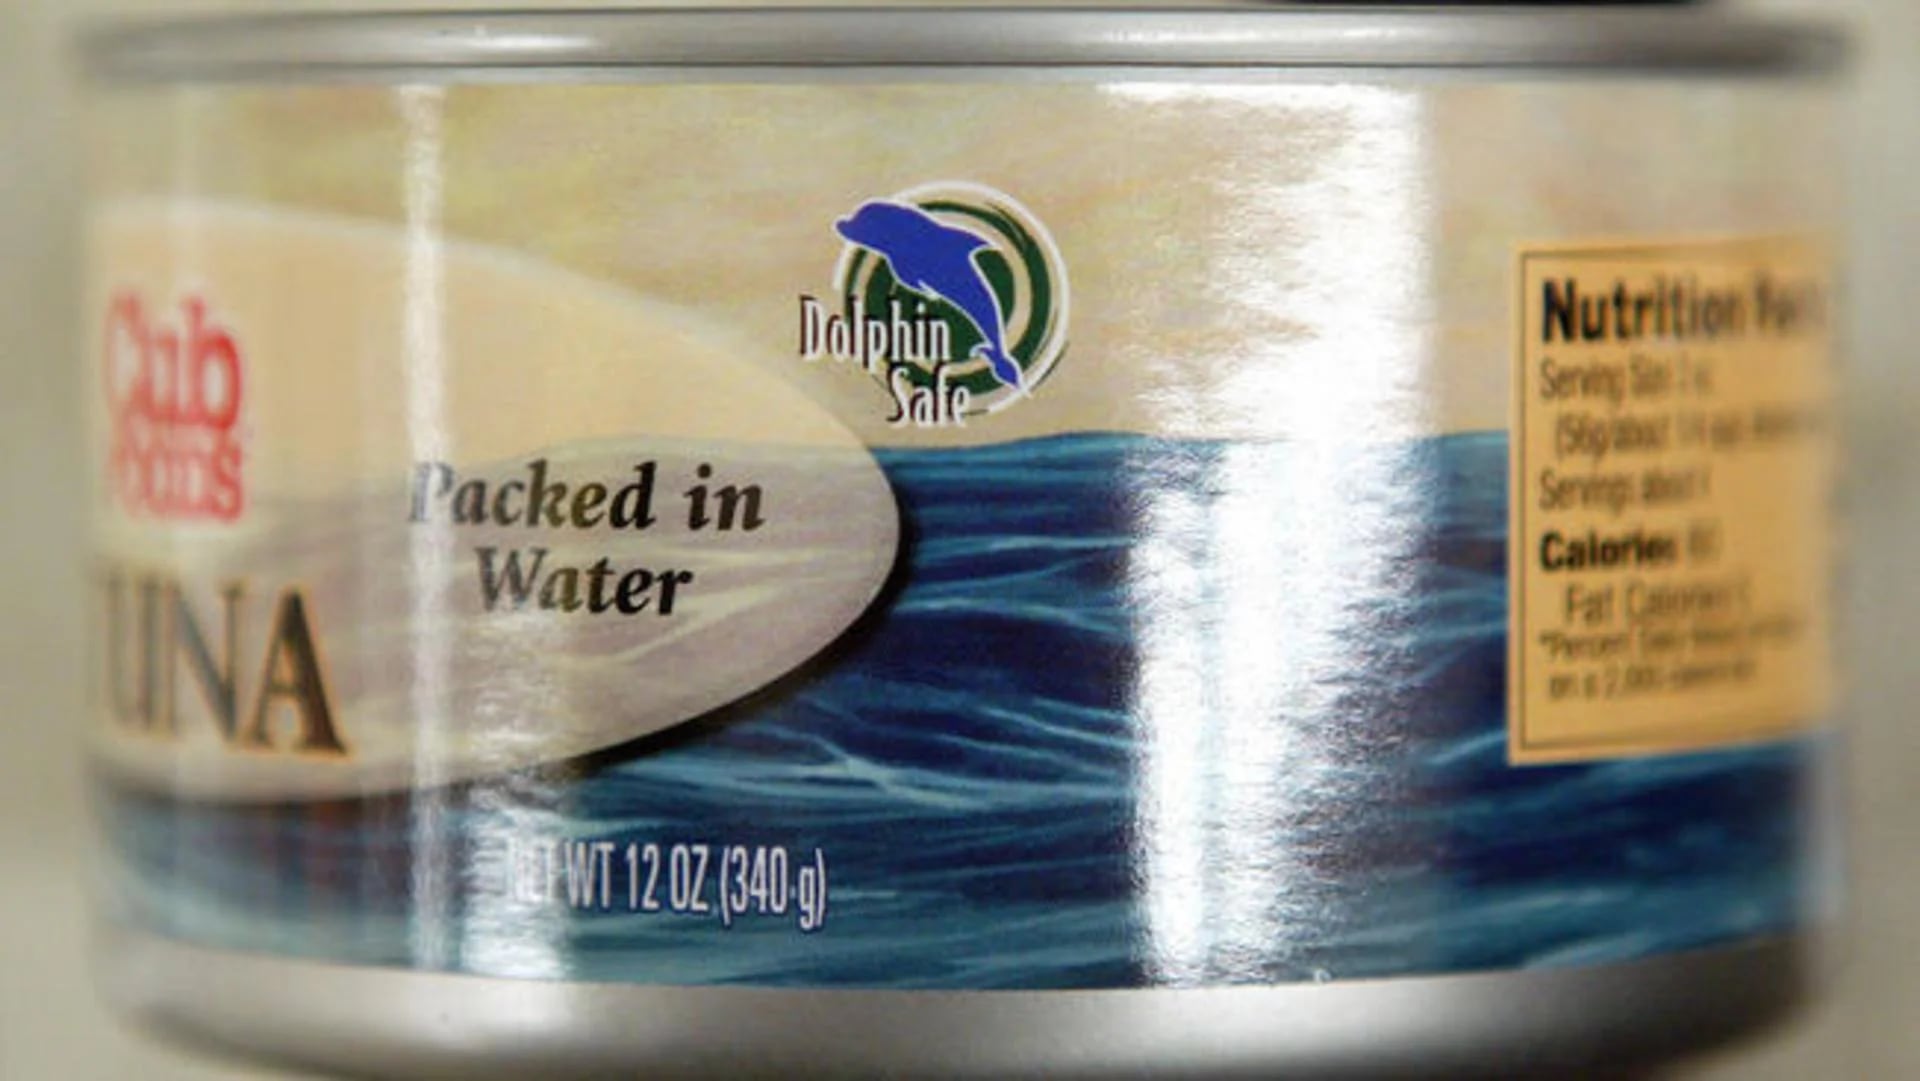 México reclama que la etiqueta “Dolphin Safe” es una discriminación contra sus productos